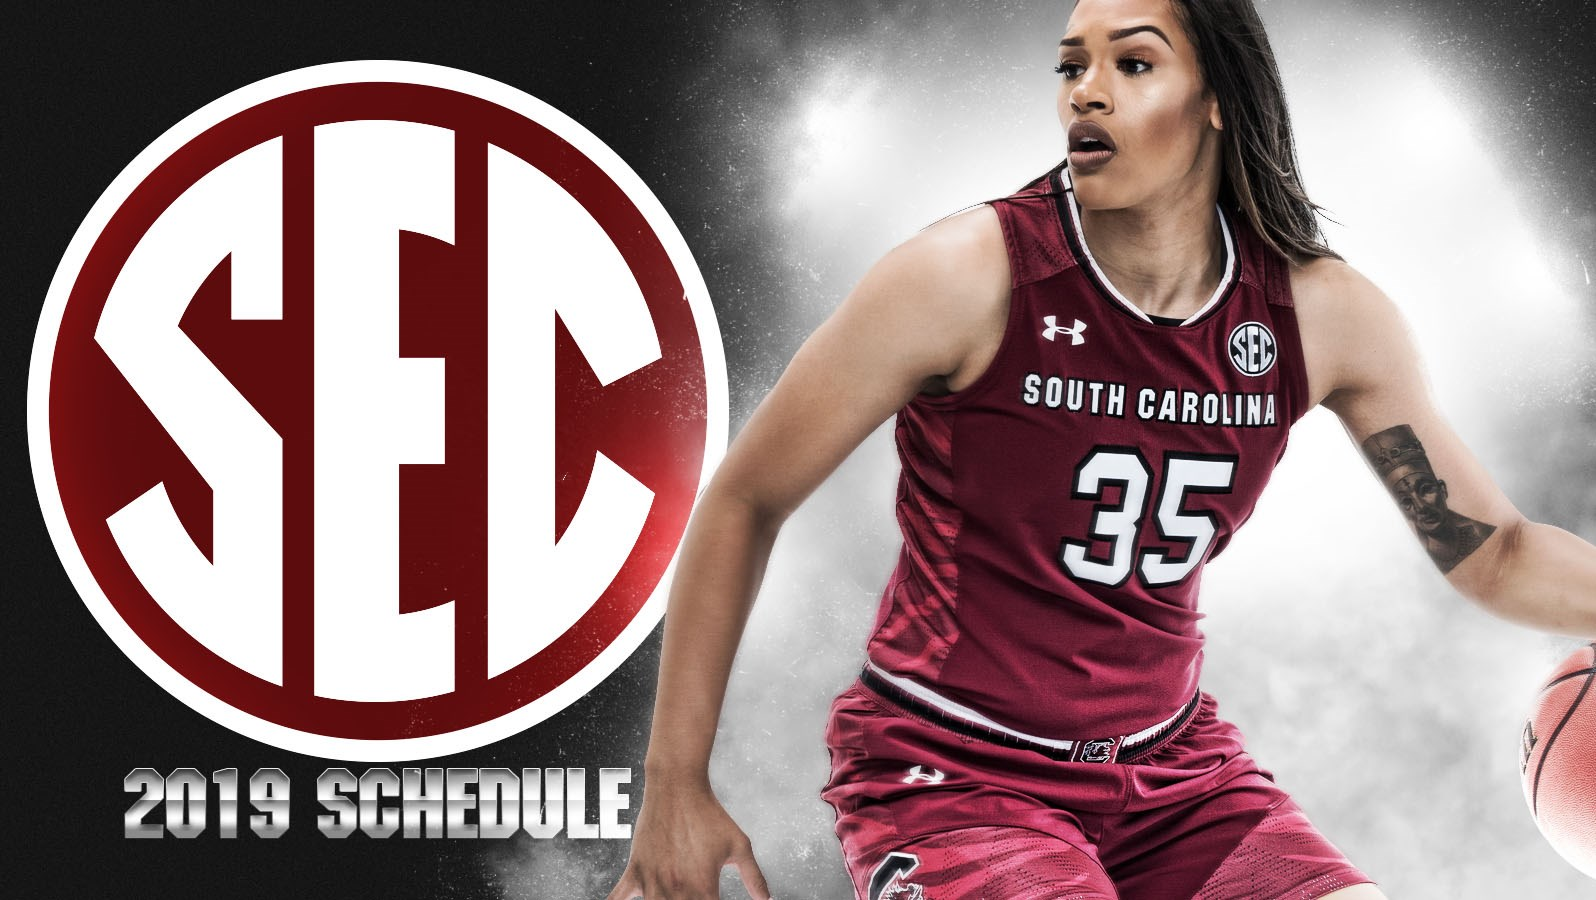 SEC Releases 2019 Women’s Basketball Schedule